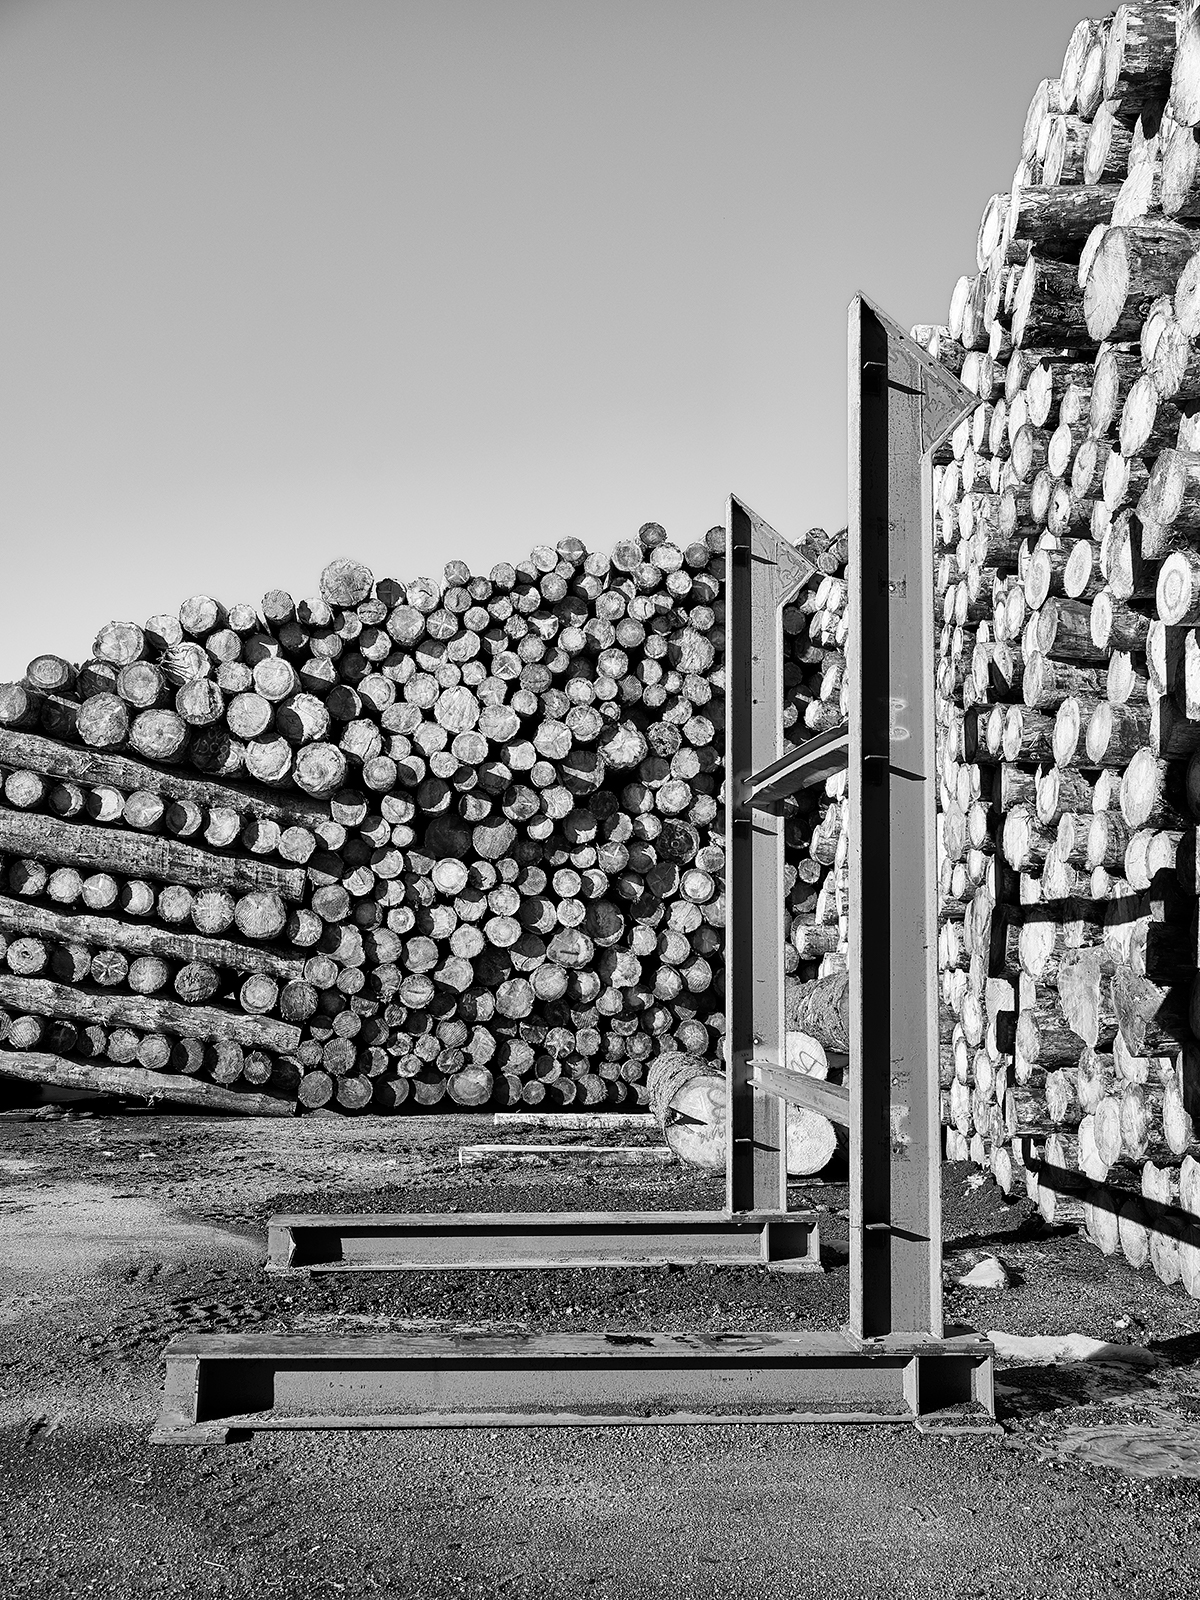 La precisione e l’ordine sono essenziali per il recupero del legname, una ricchezza che non va assolutamente persa